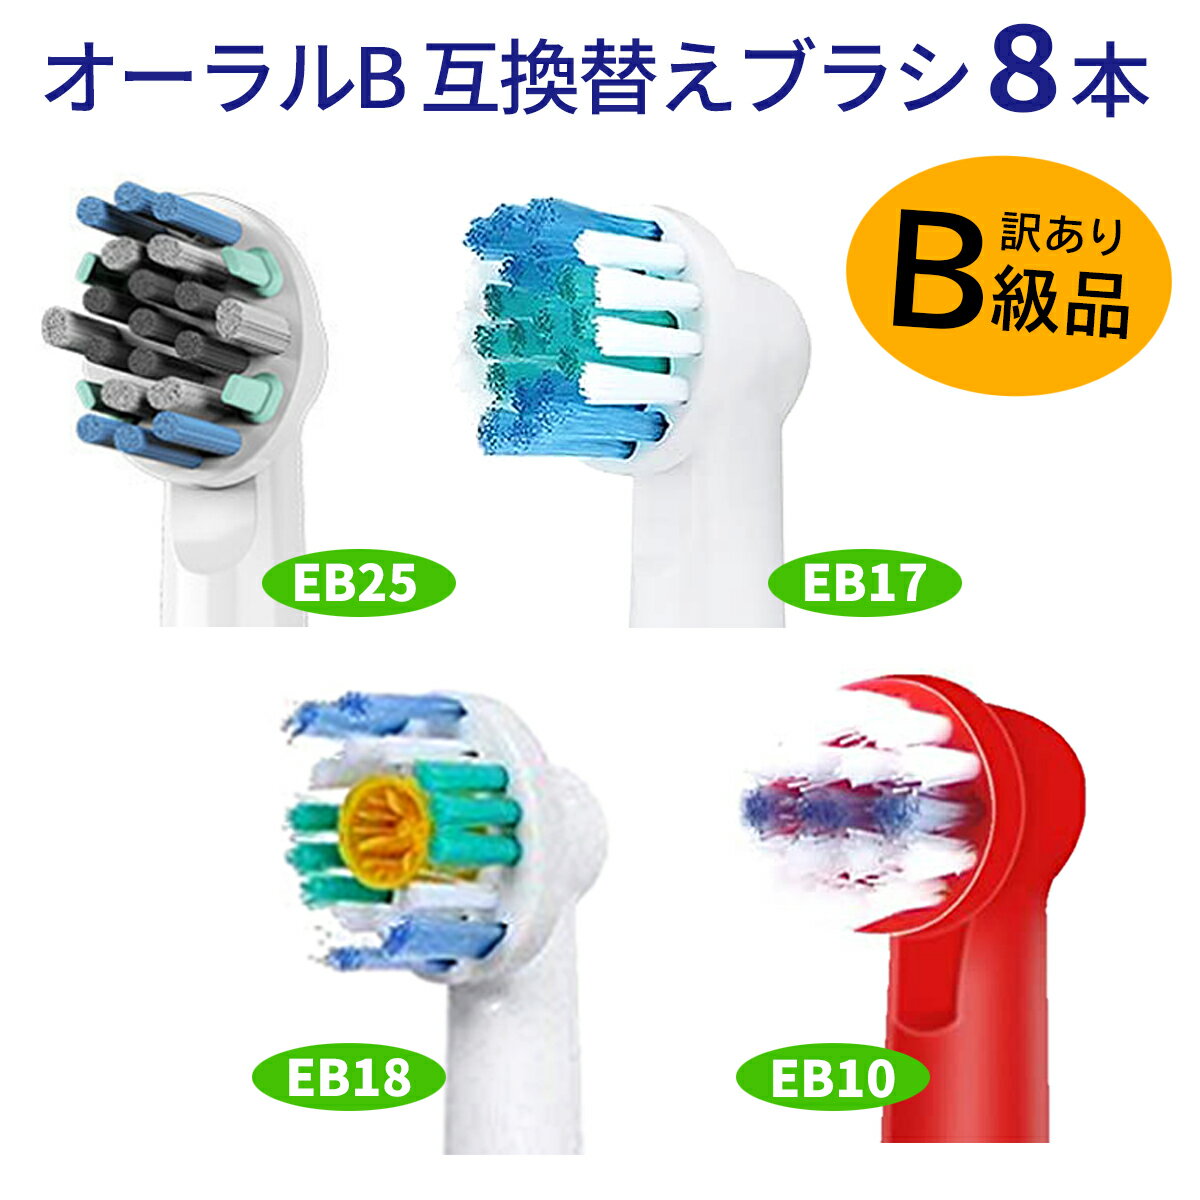 電動歯ブラシ 替えブラシ ブラウン Braun オーラルB 互換品 互換ブラシ EB10 EB18 EB25 EB17 8本セット [訳あり]